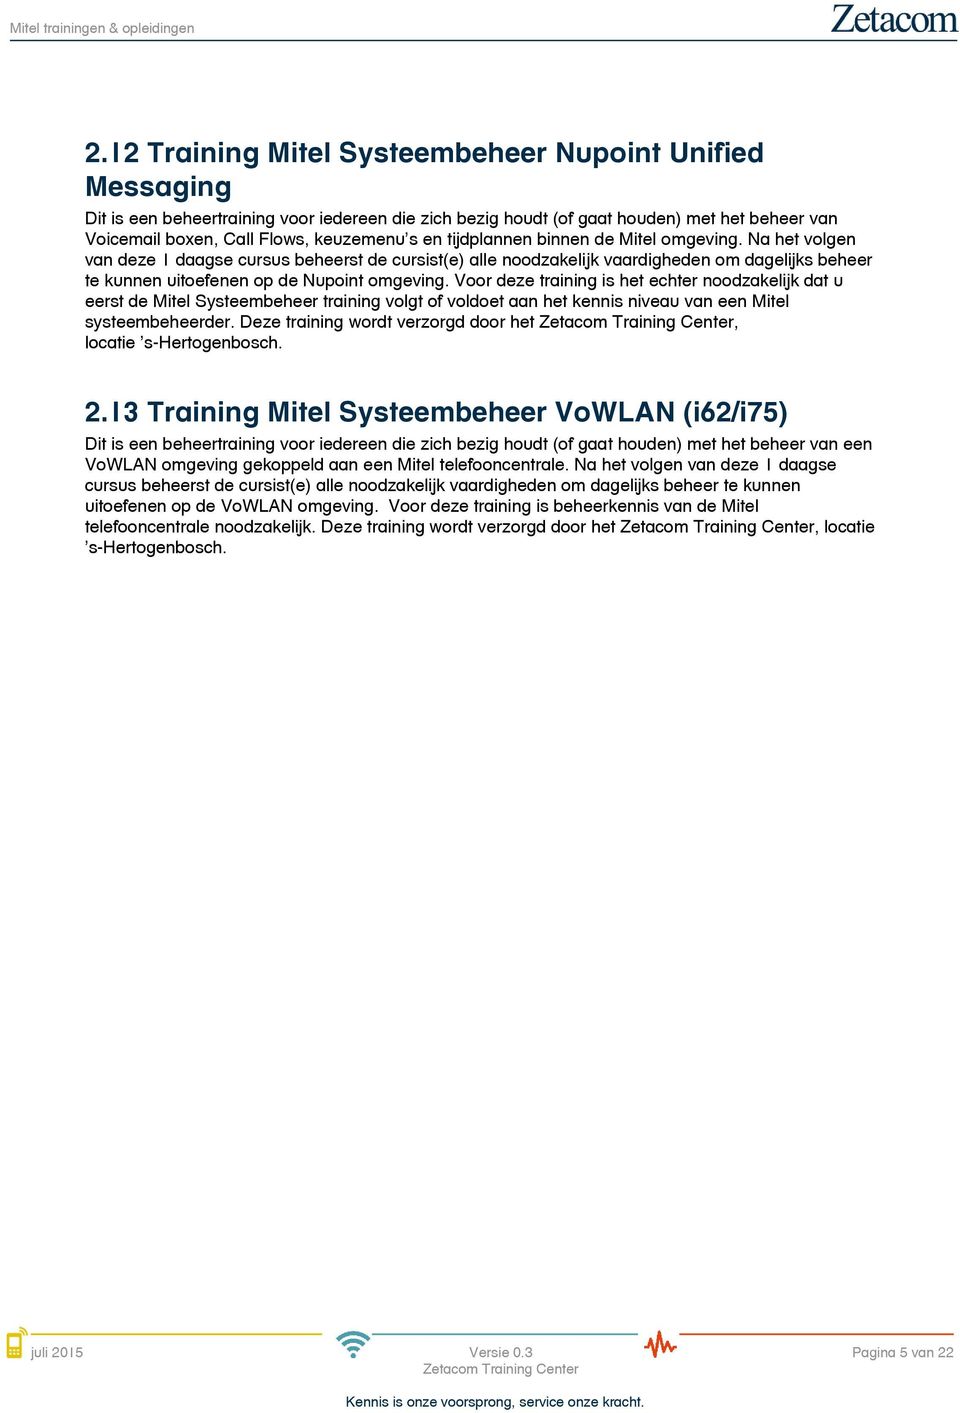 Voor deze training is het echter noodzakelijk dat u eerst de Mitel Systeembeheer training volgt of voldoet aan het kennis niveau van een Mitel systeembeheerder.